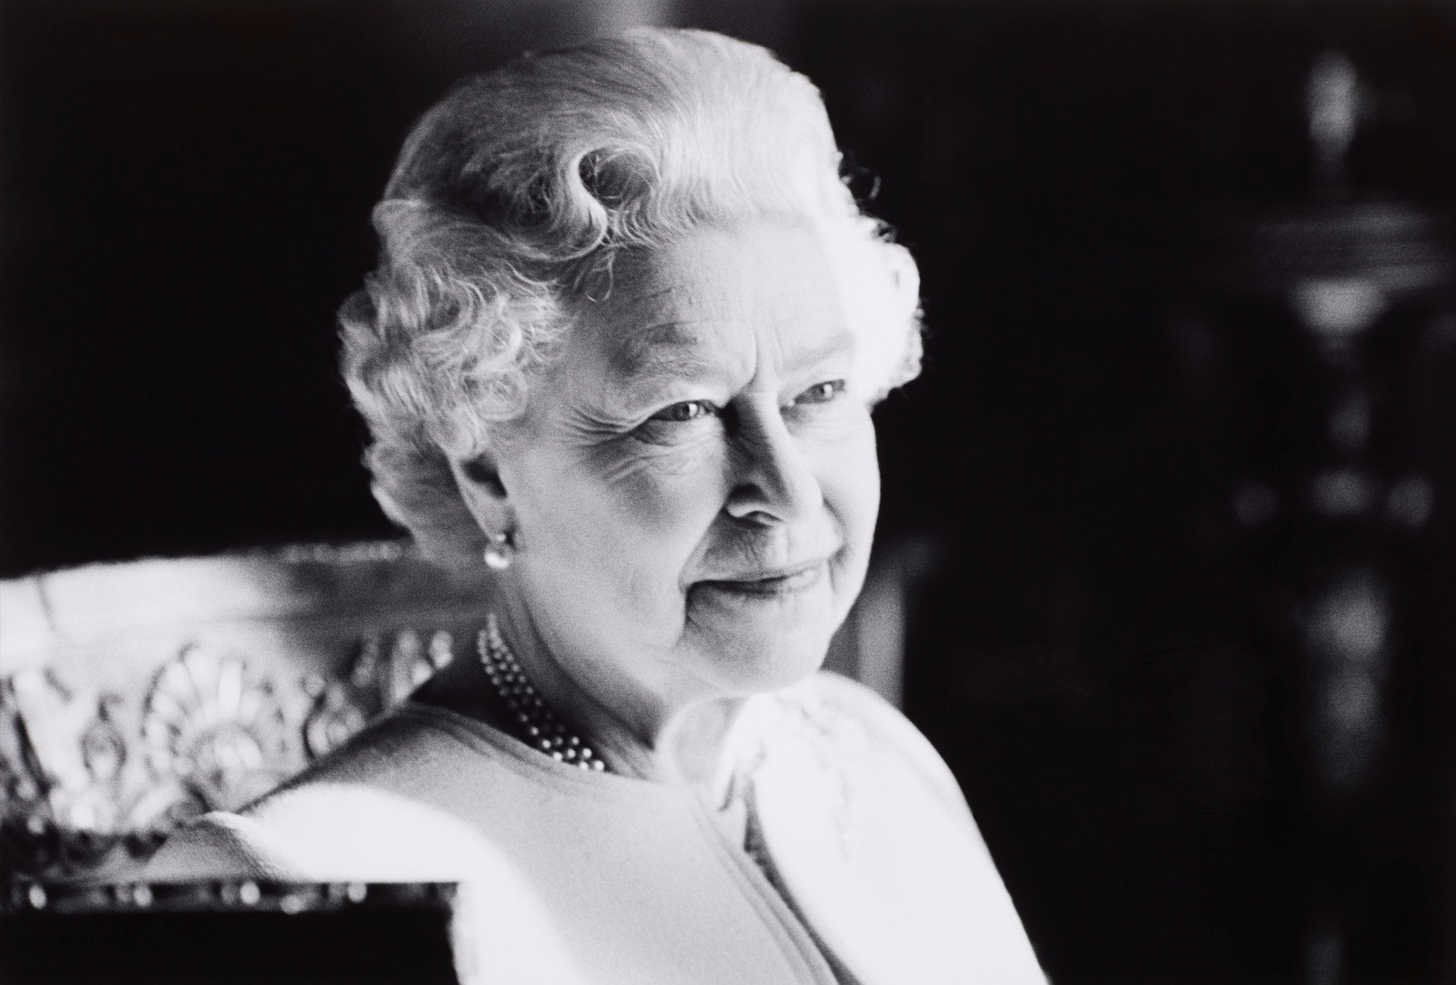 A photo of Queen Elizabeth II